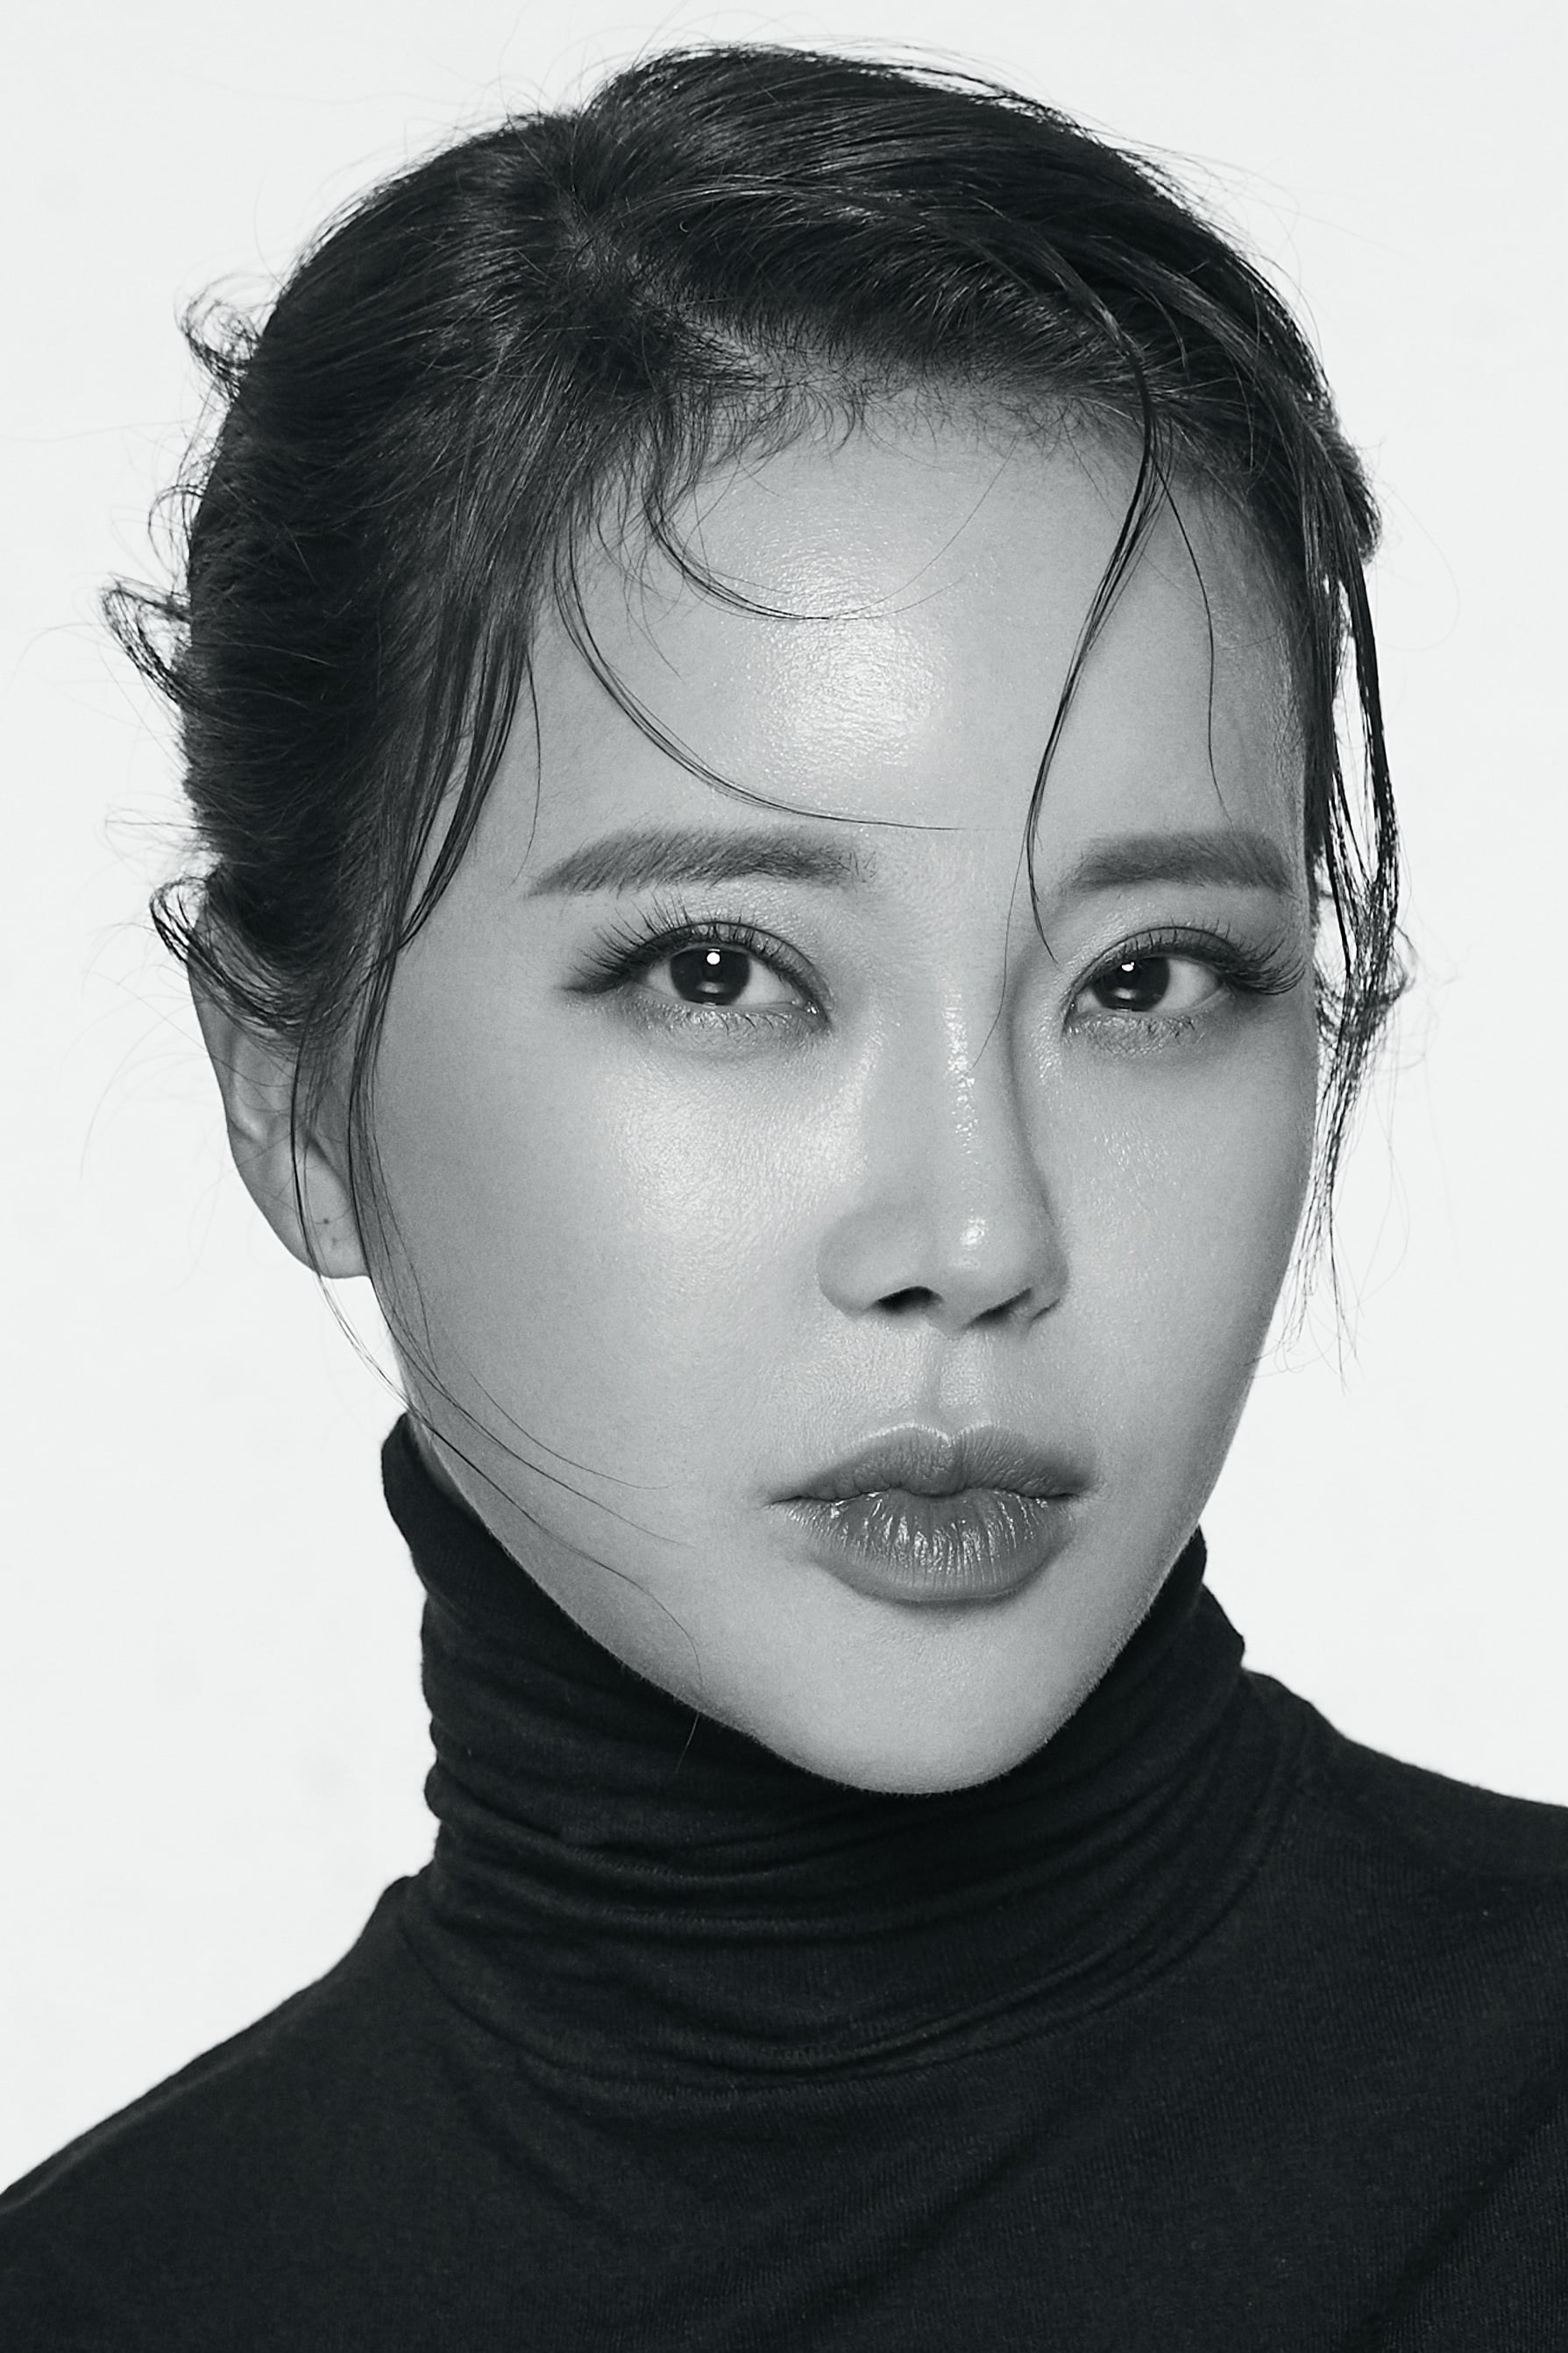 Baek Ji-young